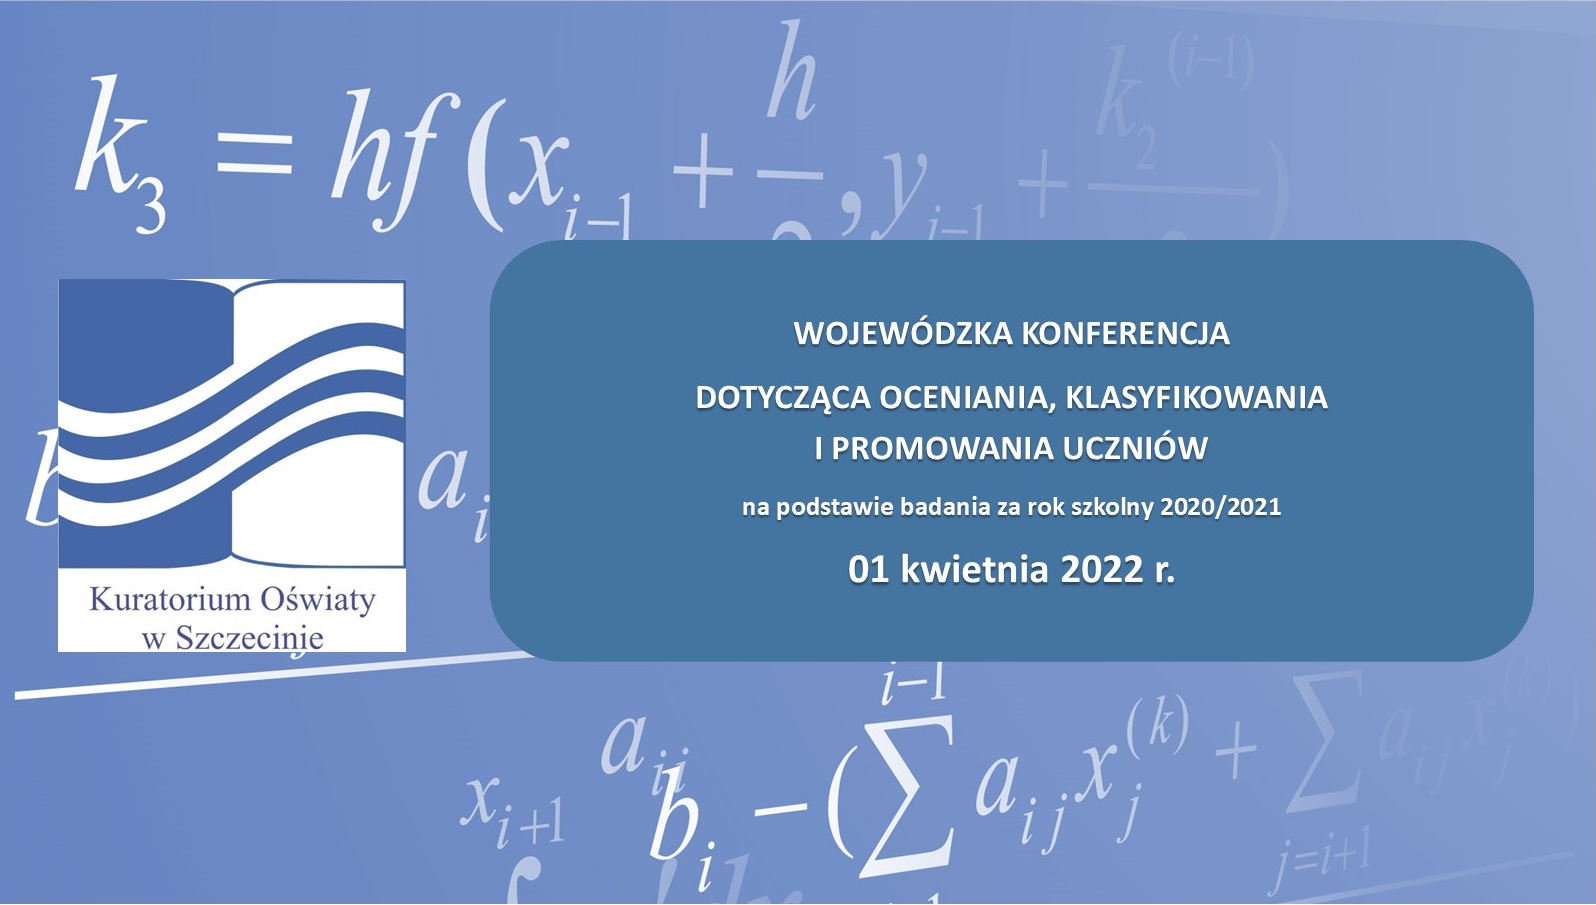 Na tle wzorów matematycznych w po lewej stronie jest logotyp Kuratorium Oświaty w Szczecinie. Po prawej tekst: "Wojewódzka konferencja dotycząca oceniania, klasyfikowania i promowania uczniów na podstawie badania za rok szkolny 2020/2021. 1 kwietnia 2022 r."